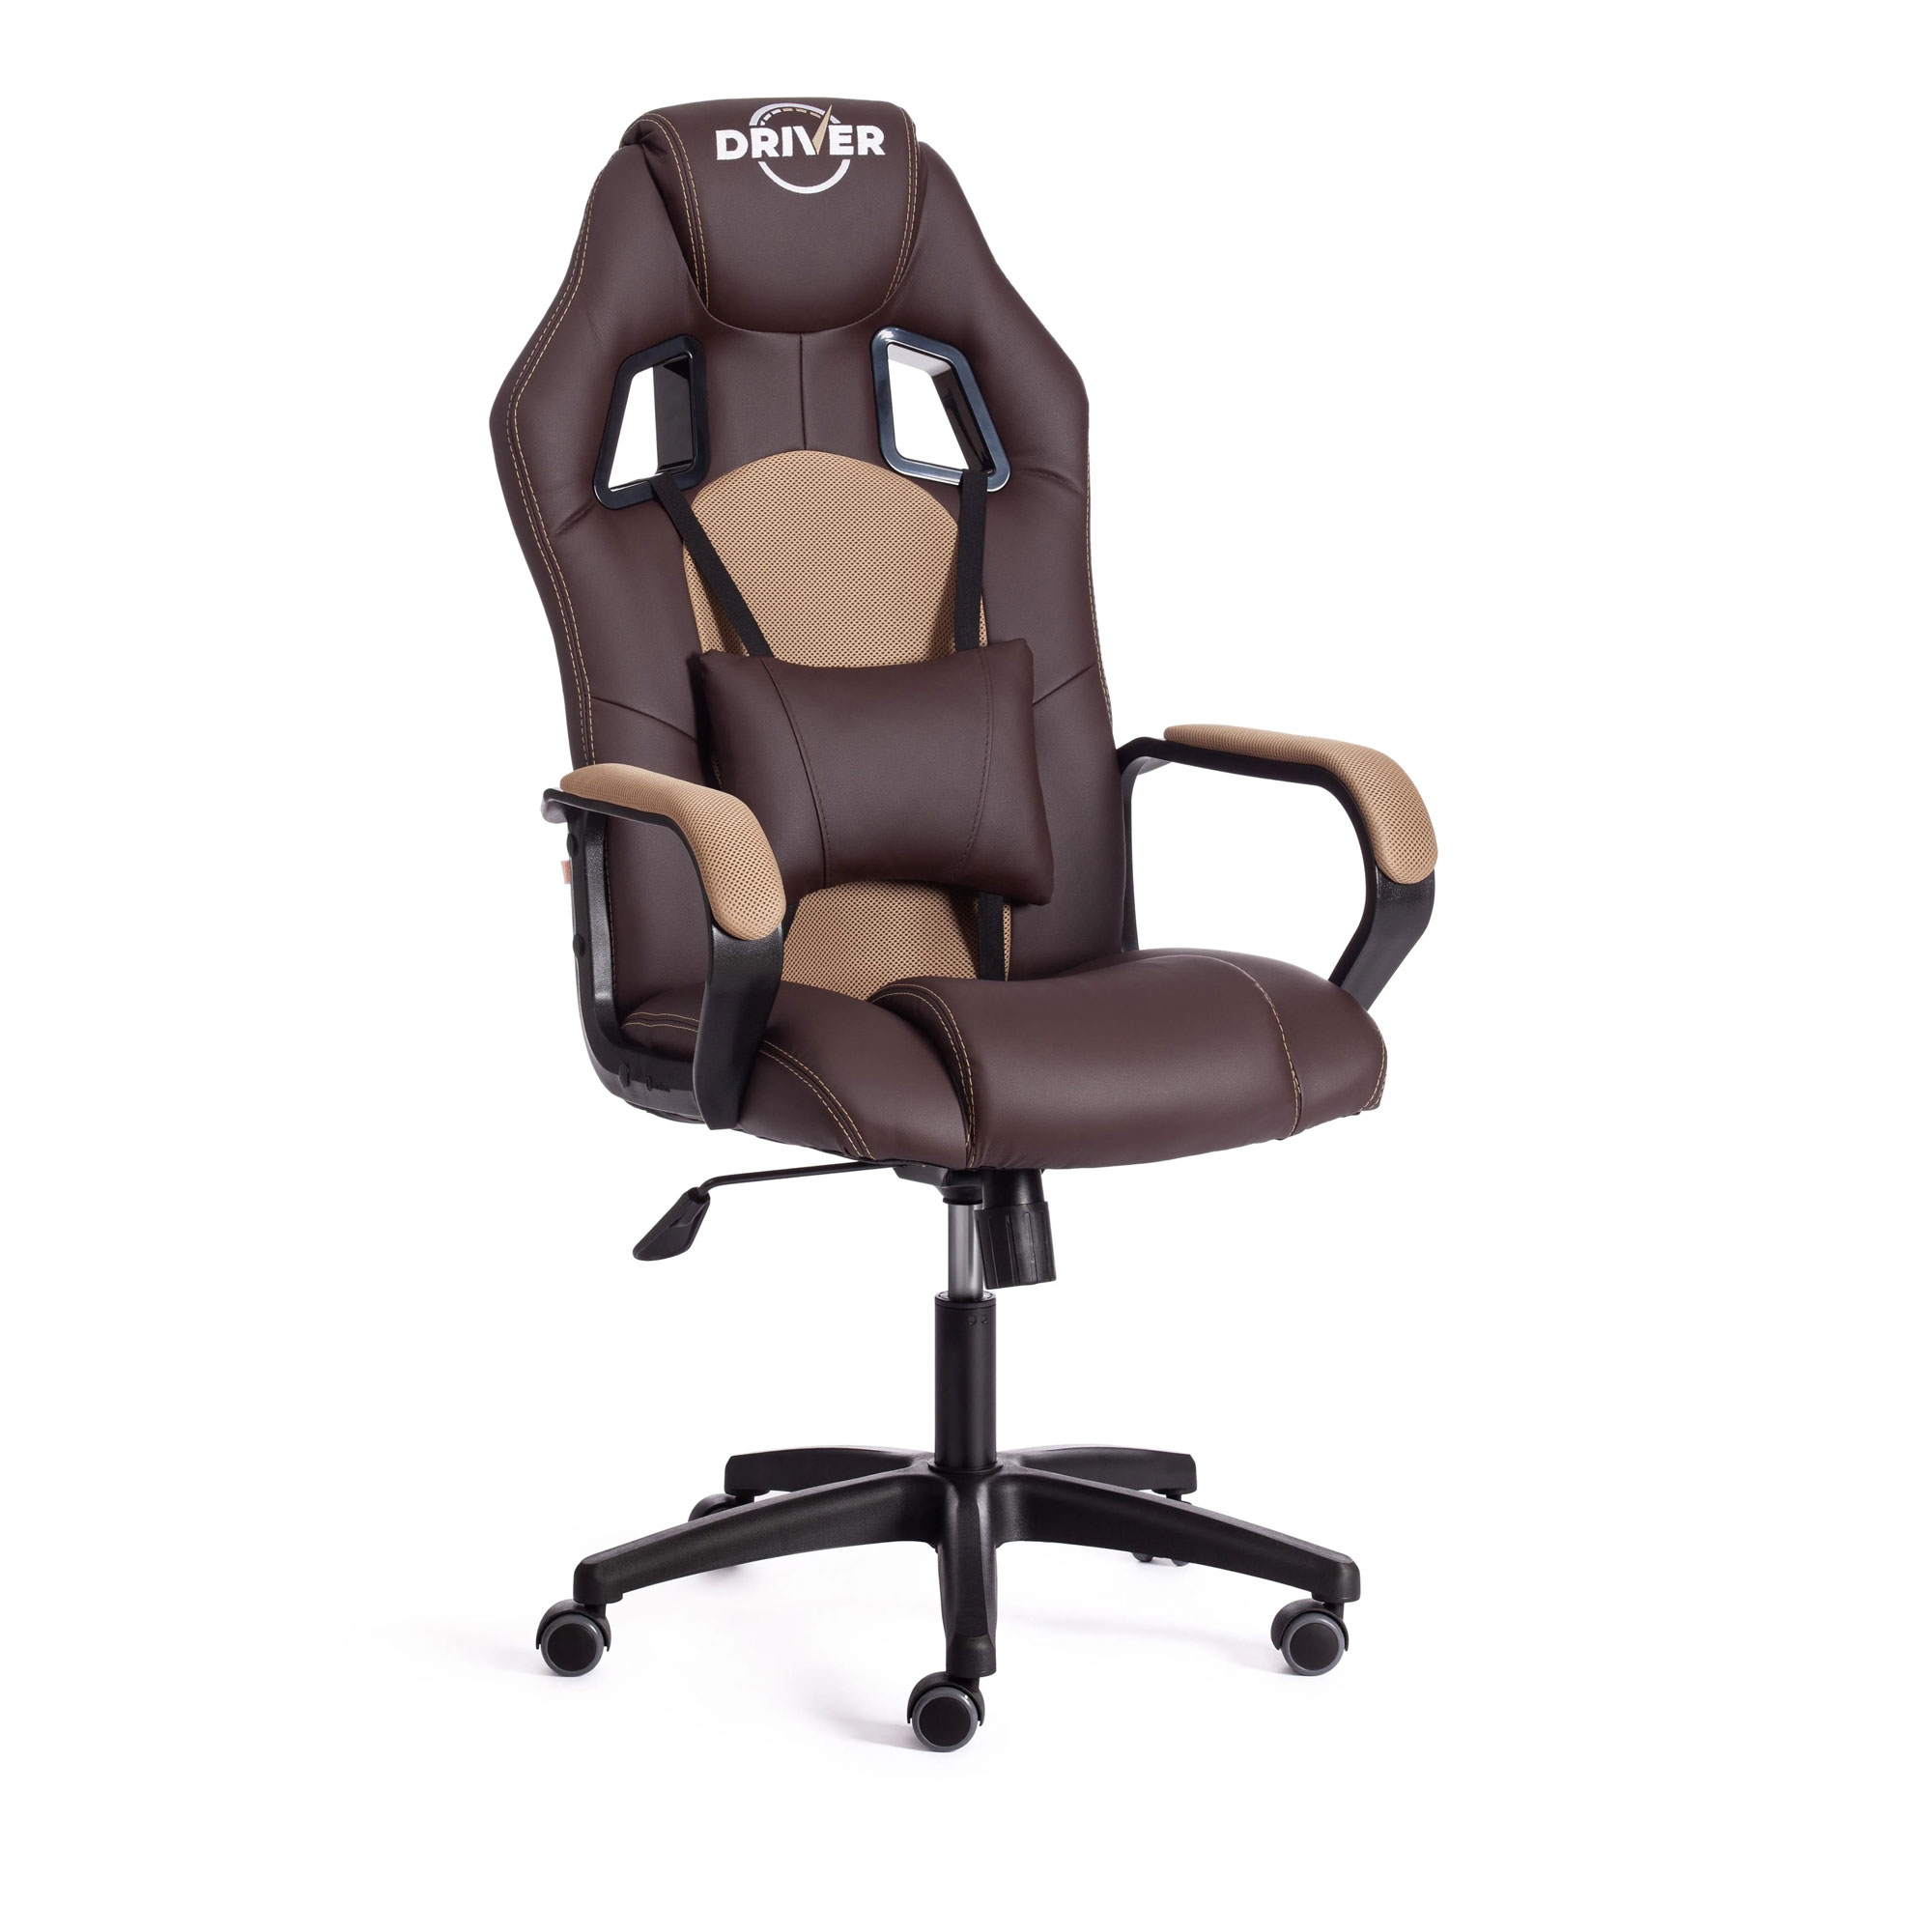 Кресло компьютерное TC Driver искусственная кожа коричневое с бронзовым 55х49х126 см кресло компьютерное tc neo искусственная кожа коричневое с бежевым 64х49х122 см